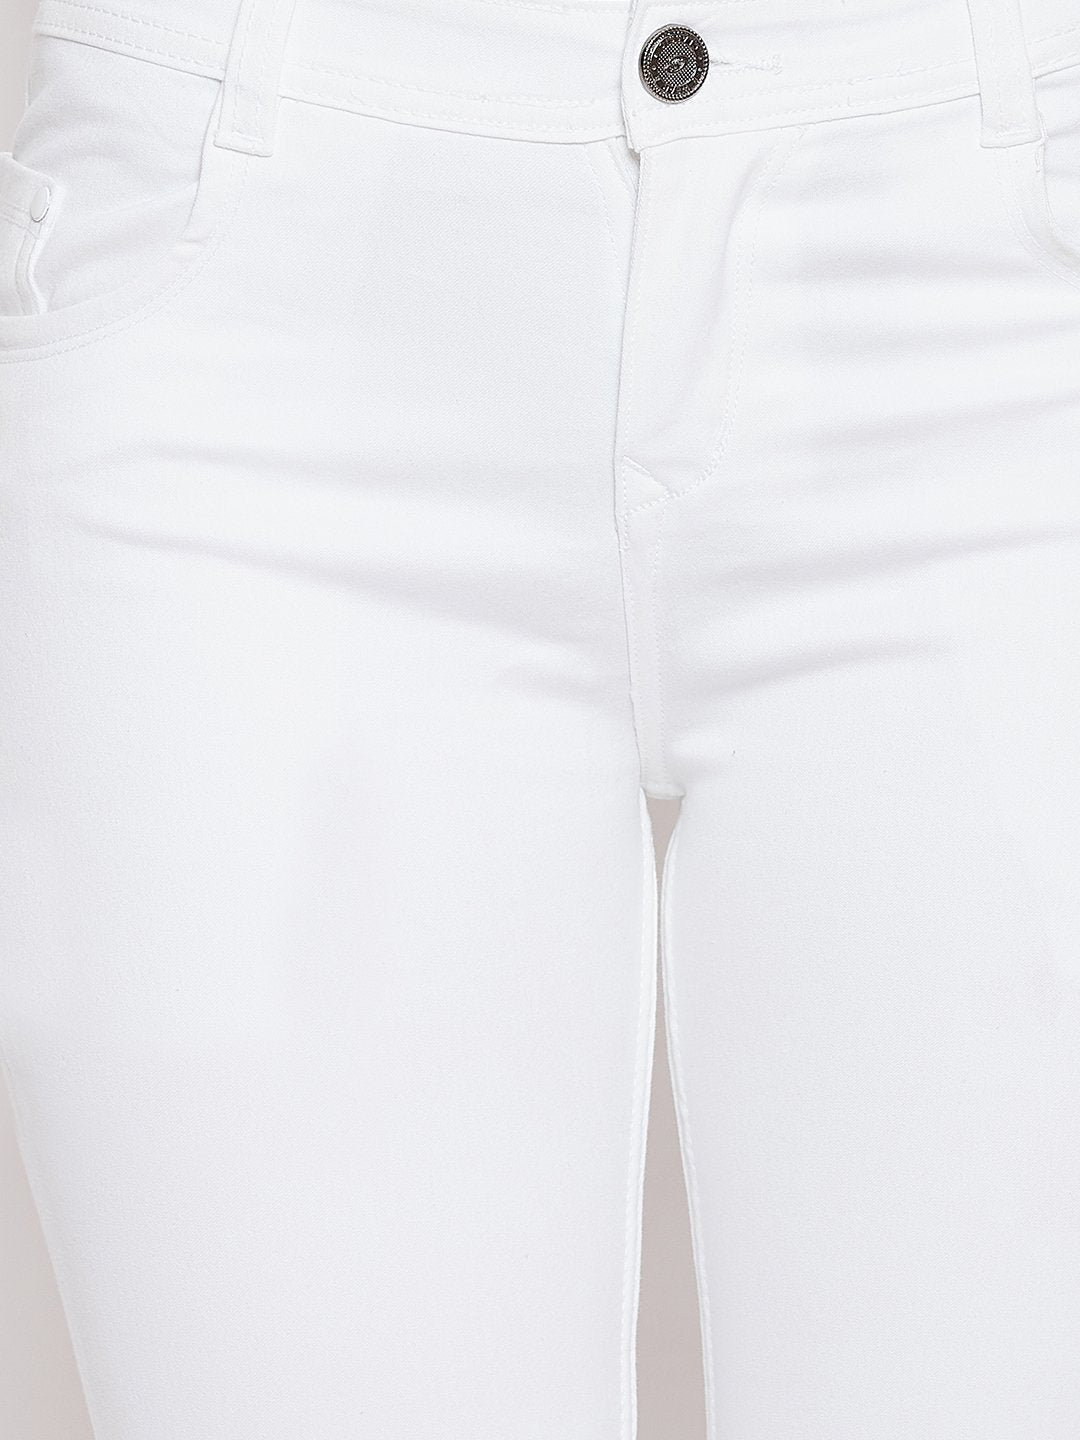 RED TAPE Skinny Men White Jeans - Buy RED TAPE Skinny Men White Jeans  Online at Best Prices in India | Flipkart.com